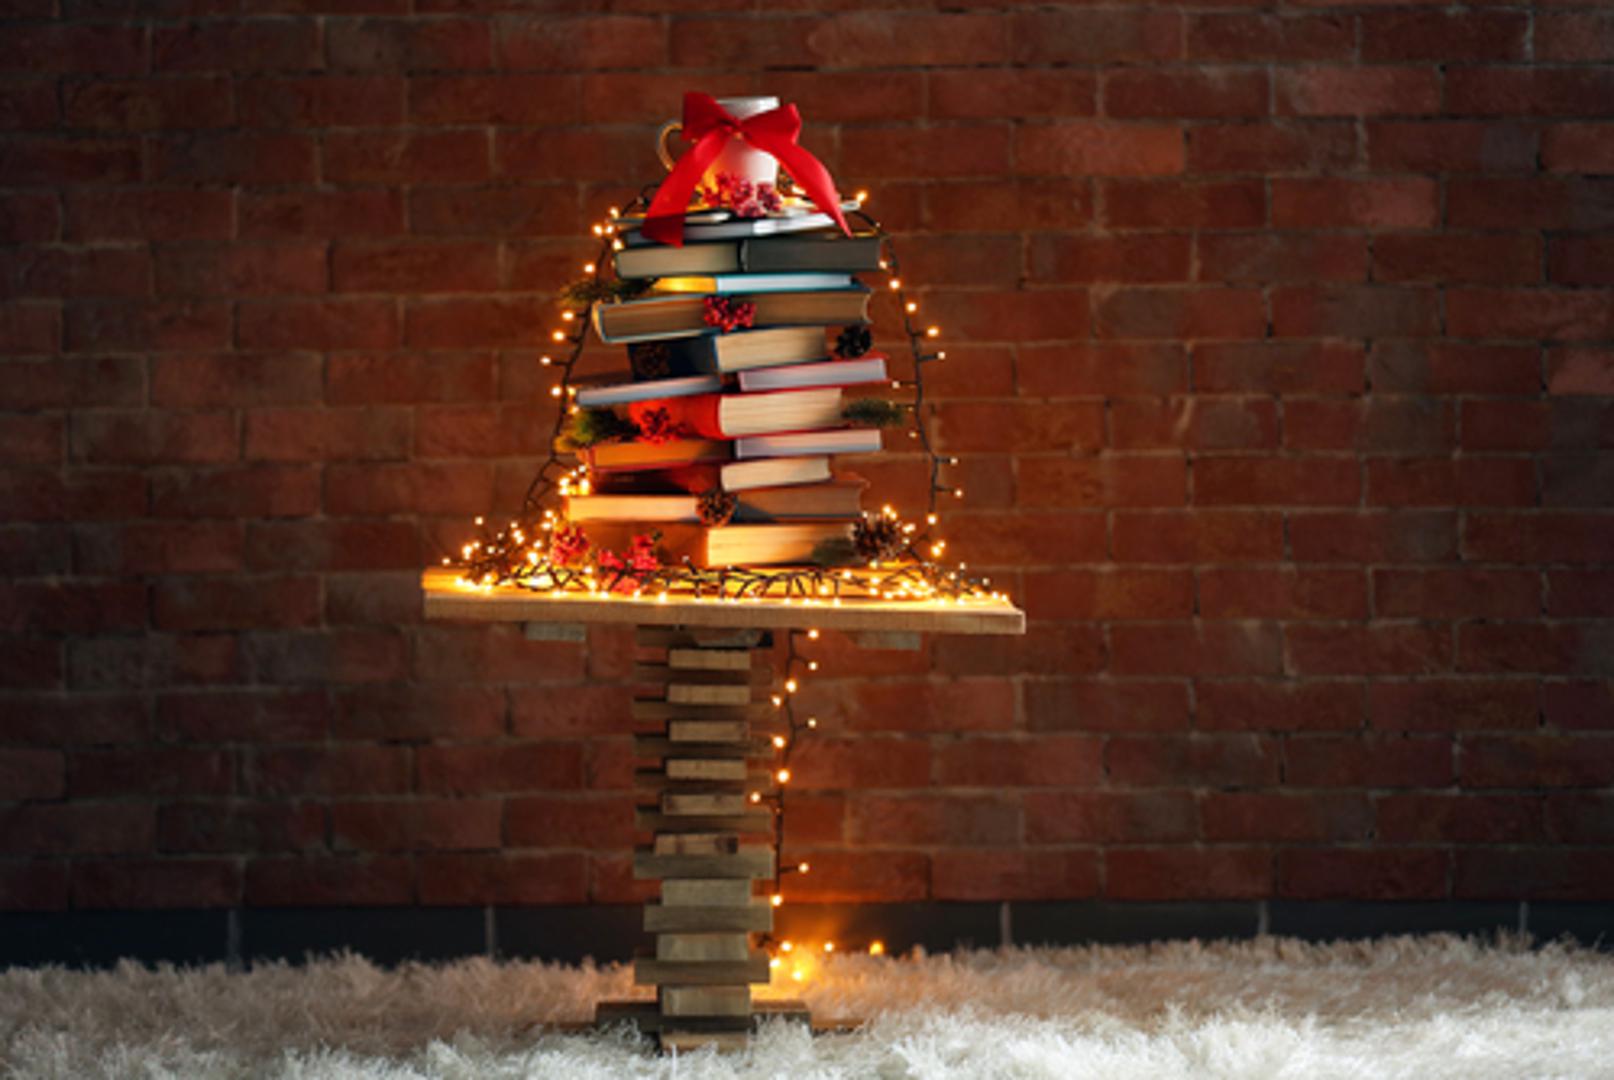 Jednostavno, a vrlo efektno rješenje jest knjige složiti u obliku bora i dodati im - lampice!